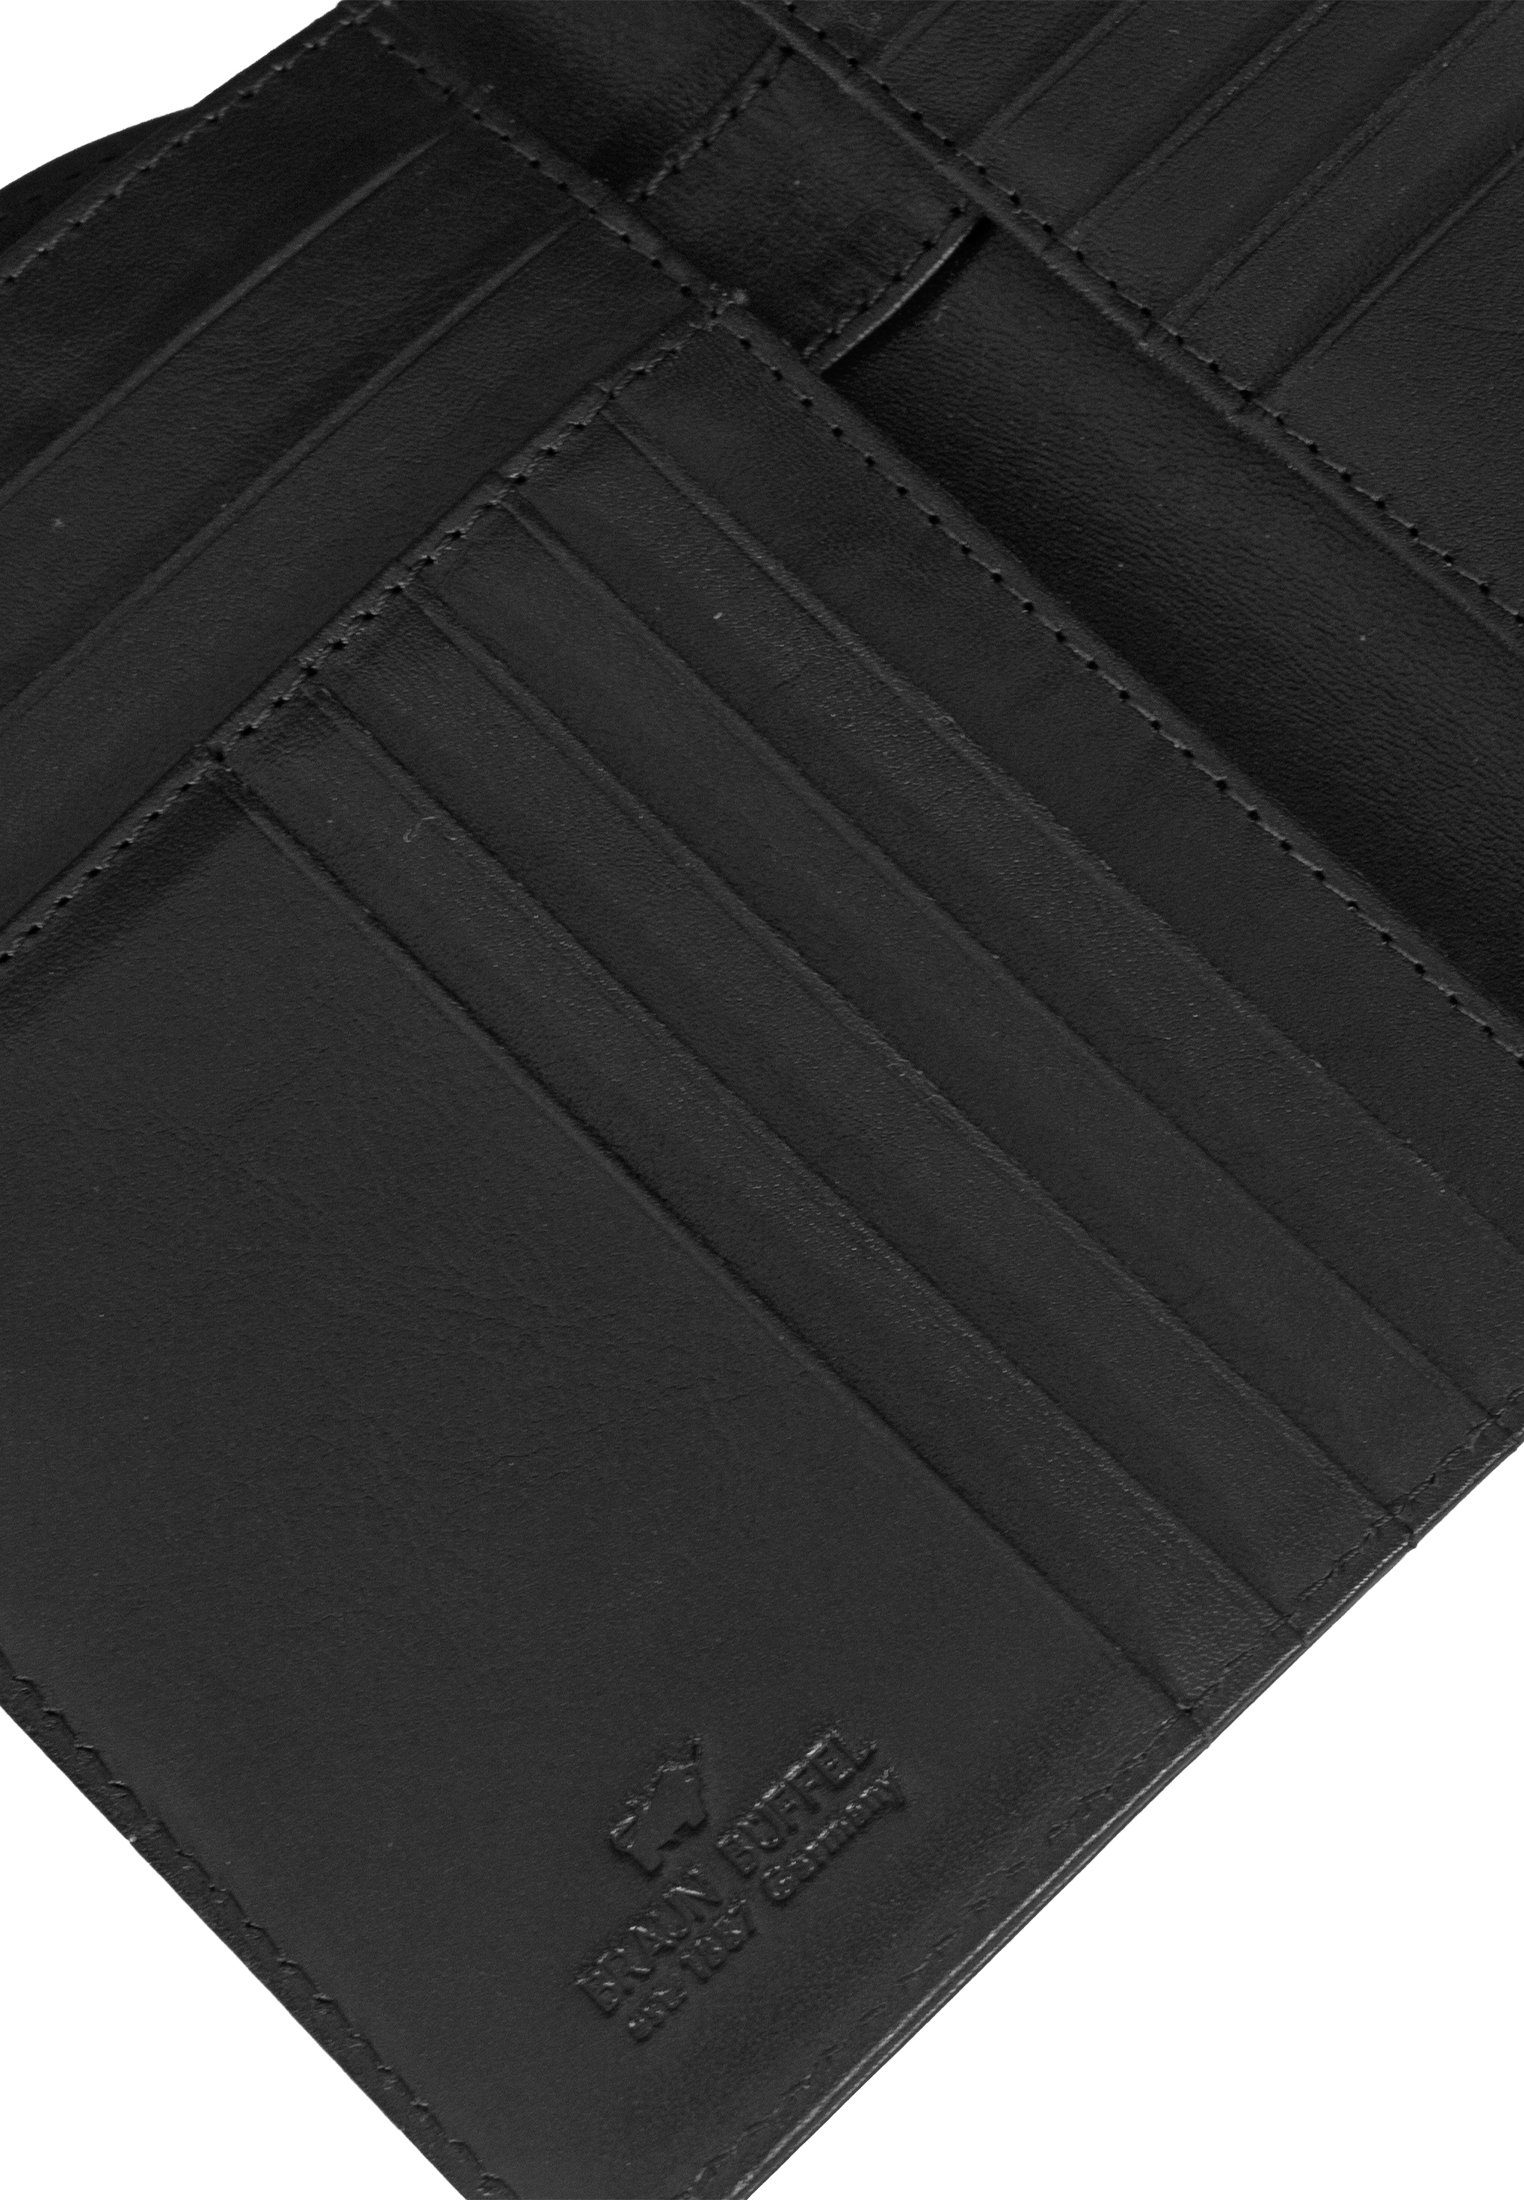 Stiftehalter Brieftasche schwarz COUNTRY RFID Brieftasche, mit Büffel Braun